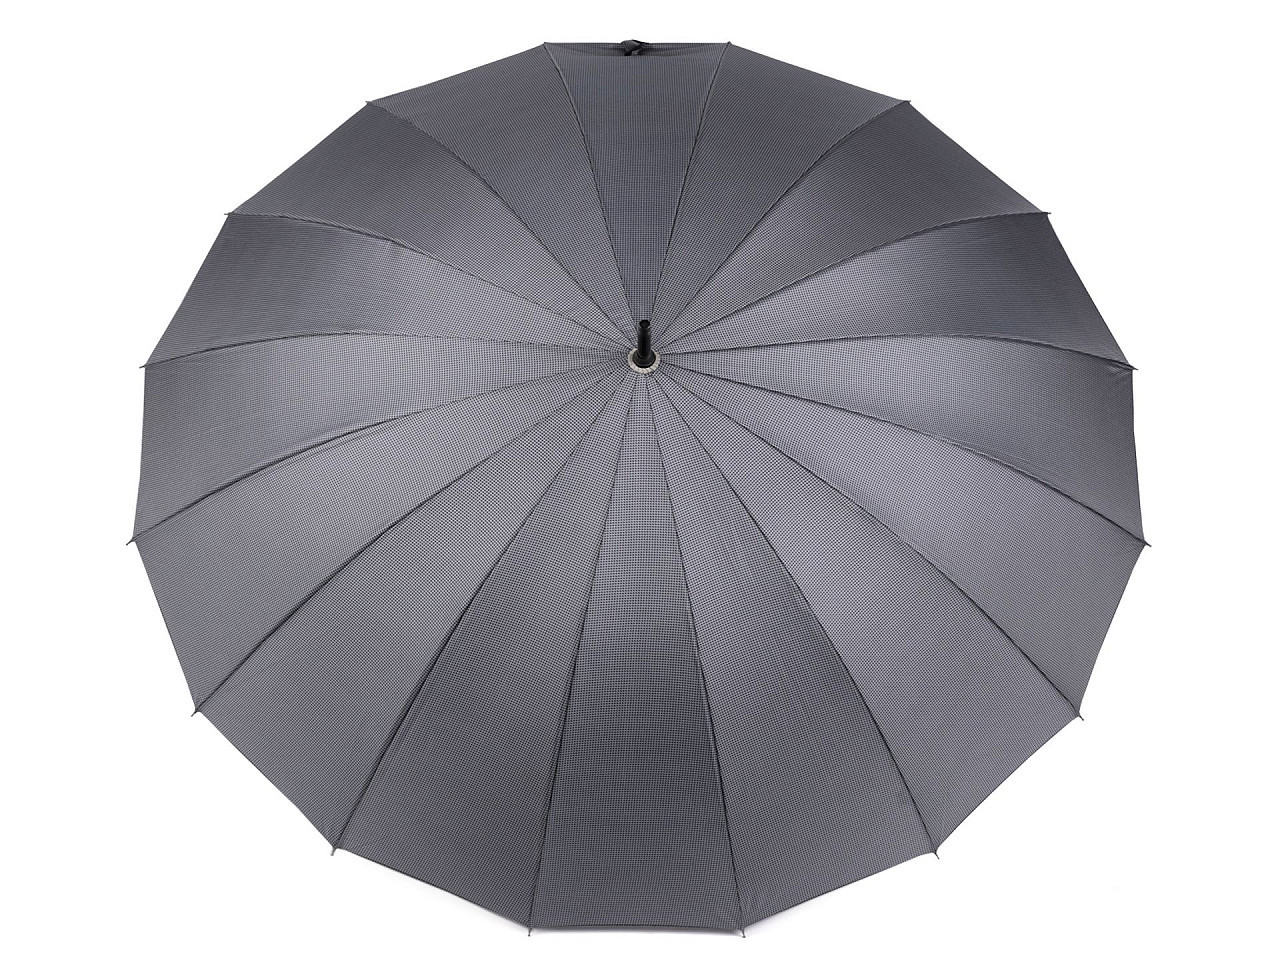 Velký rodinný vystřelovací deštník, barva 2 šedá světlá